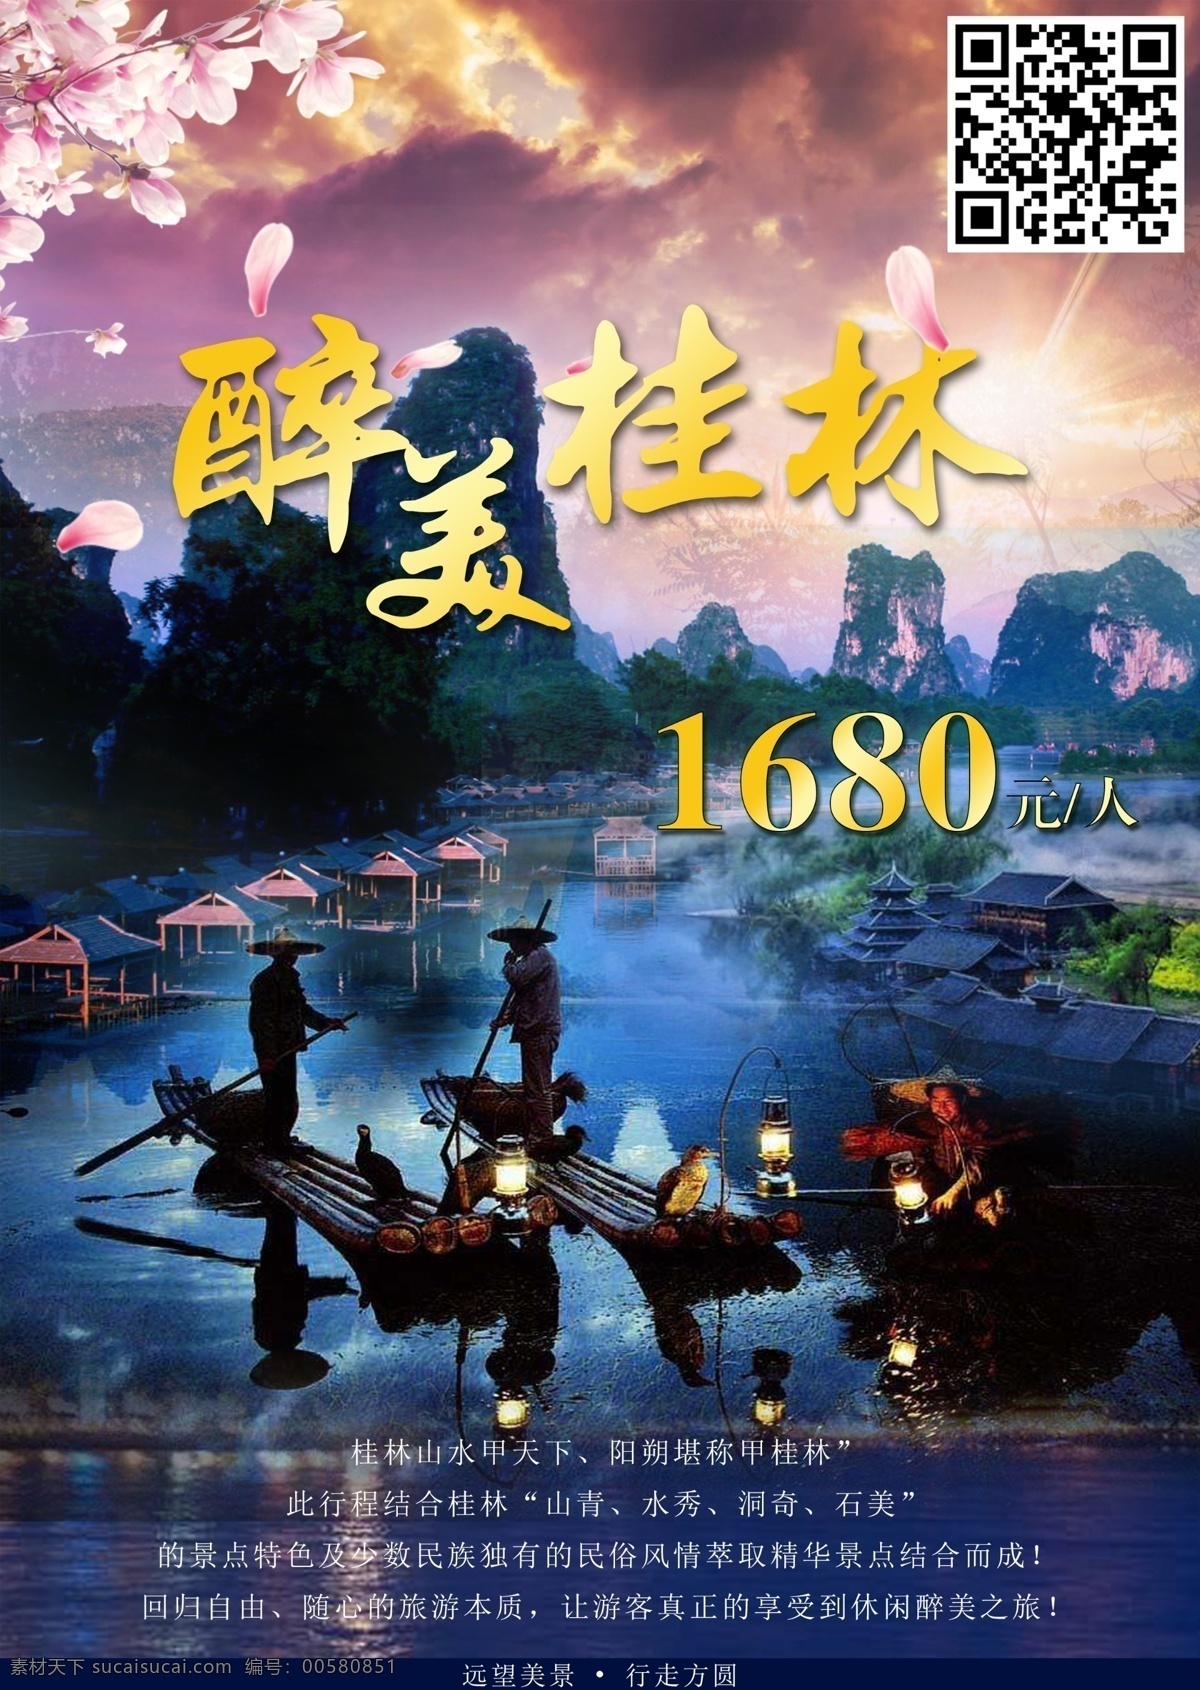 桂林风景 旅游 海报 桂林 风景 小船 桃花